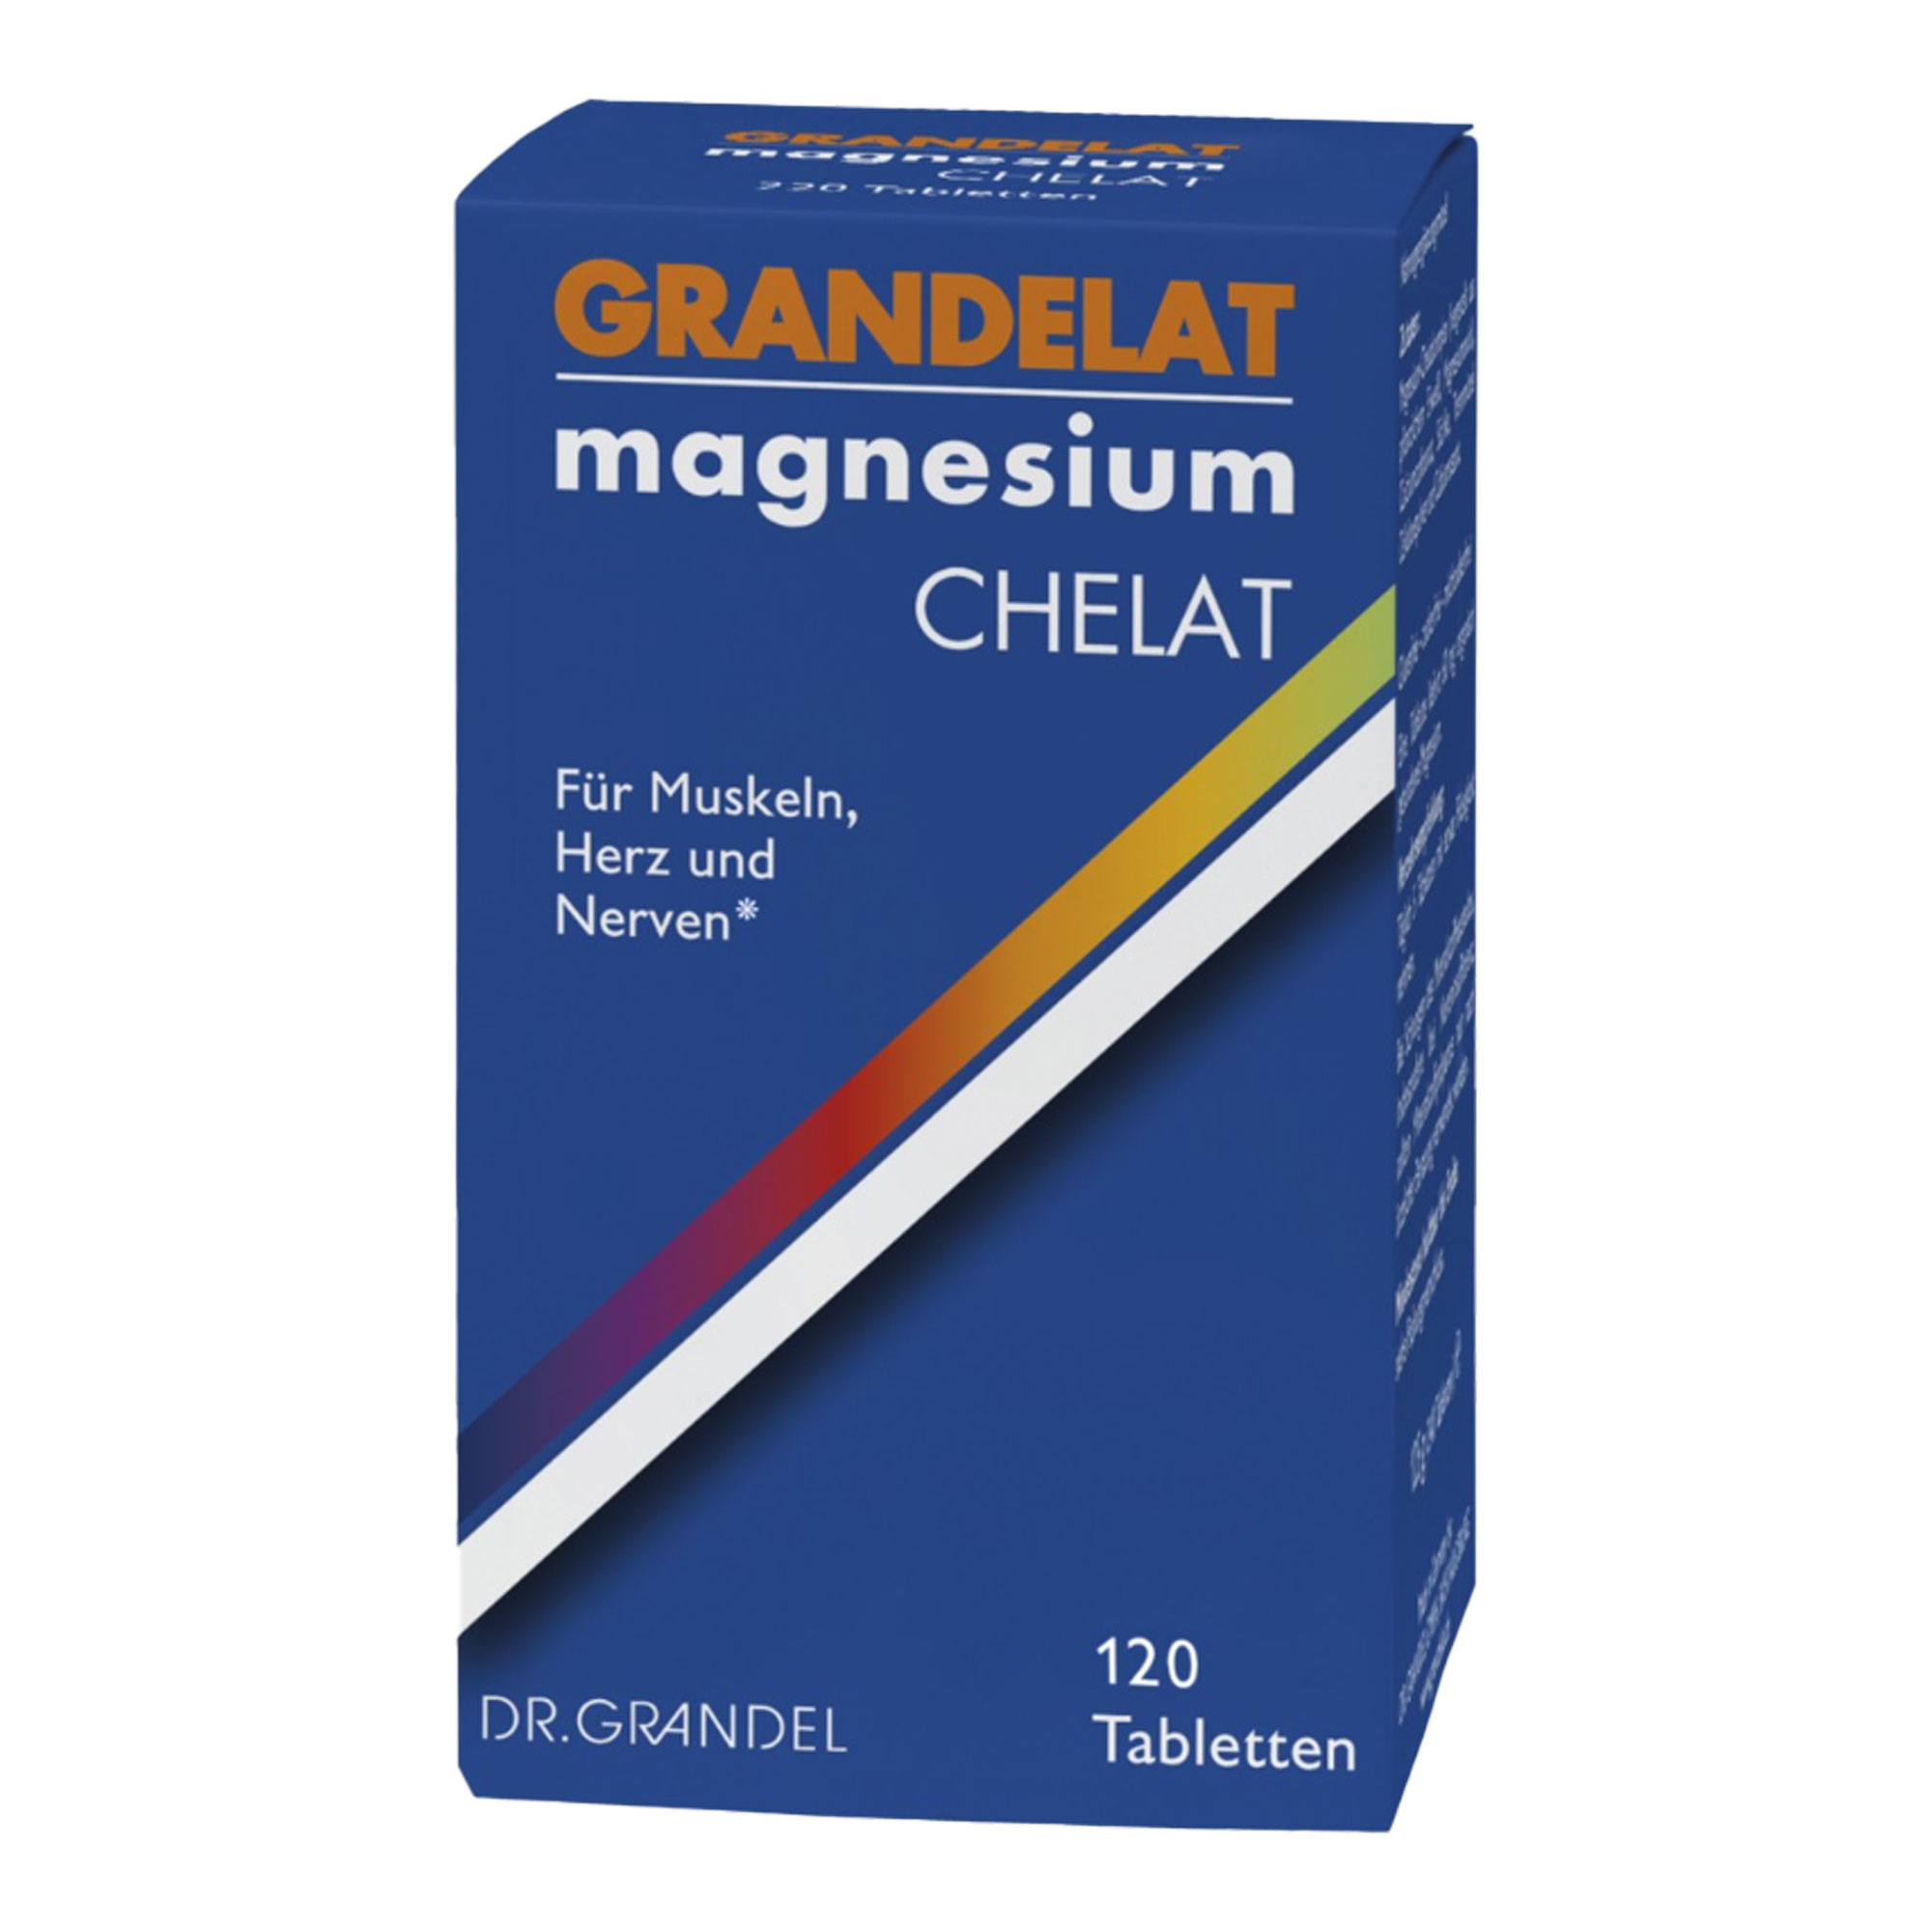 Nahrungsergänzungsmittel mit 60 g Magnesium pro Tablette.